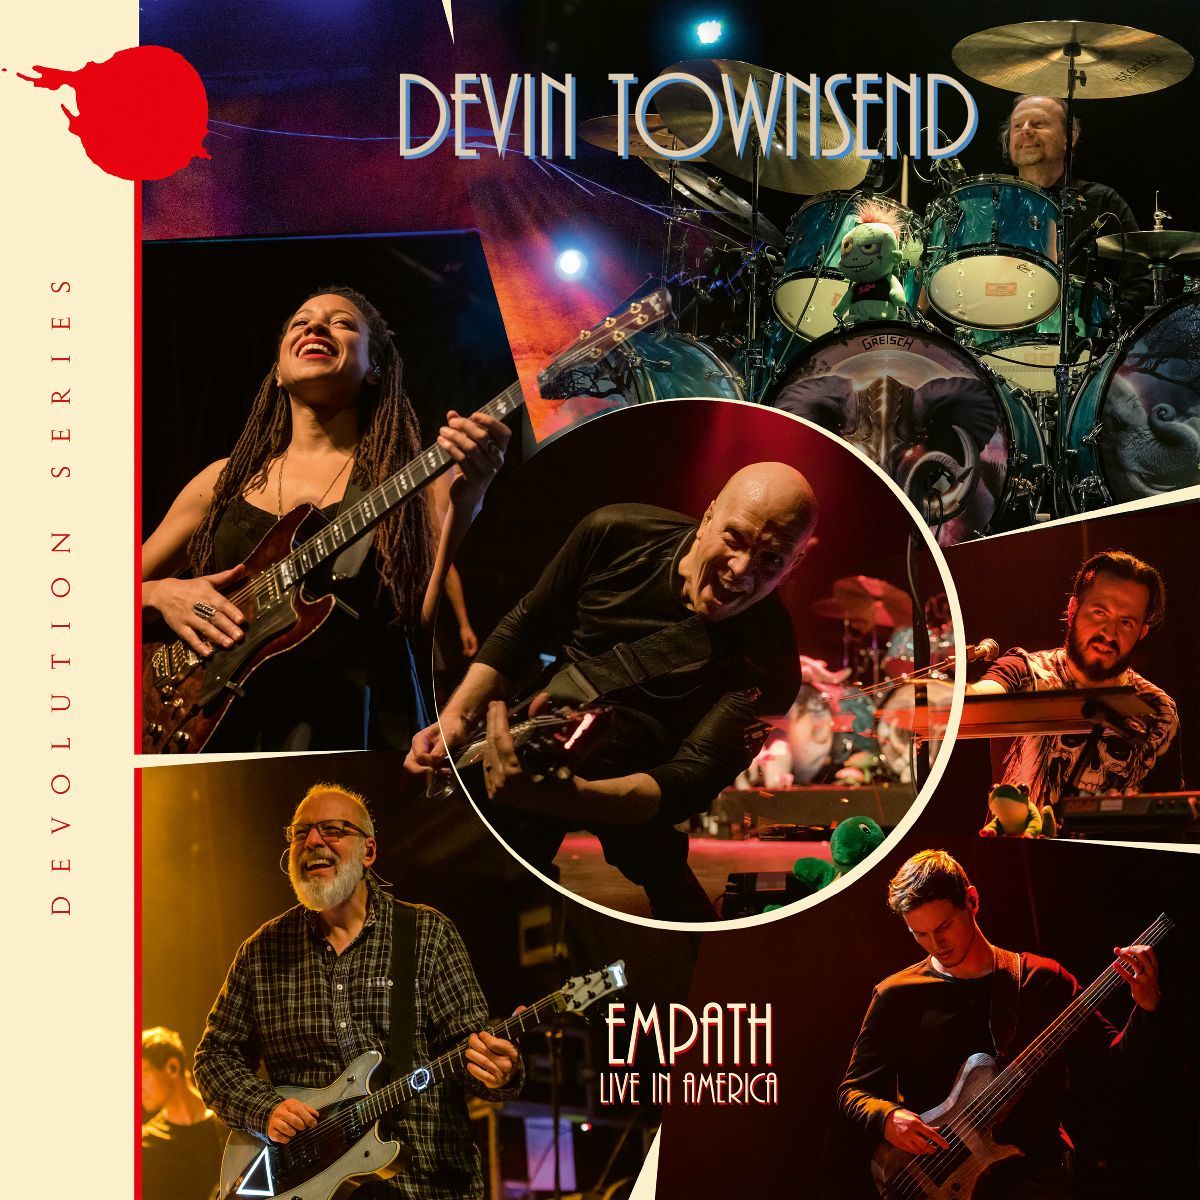 Devin Townsend - "Empath Live In America"